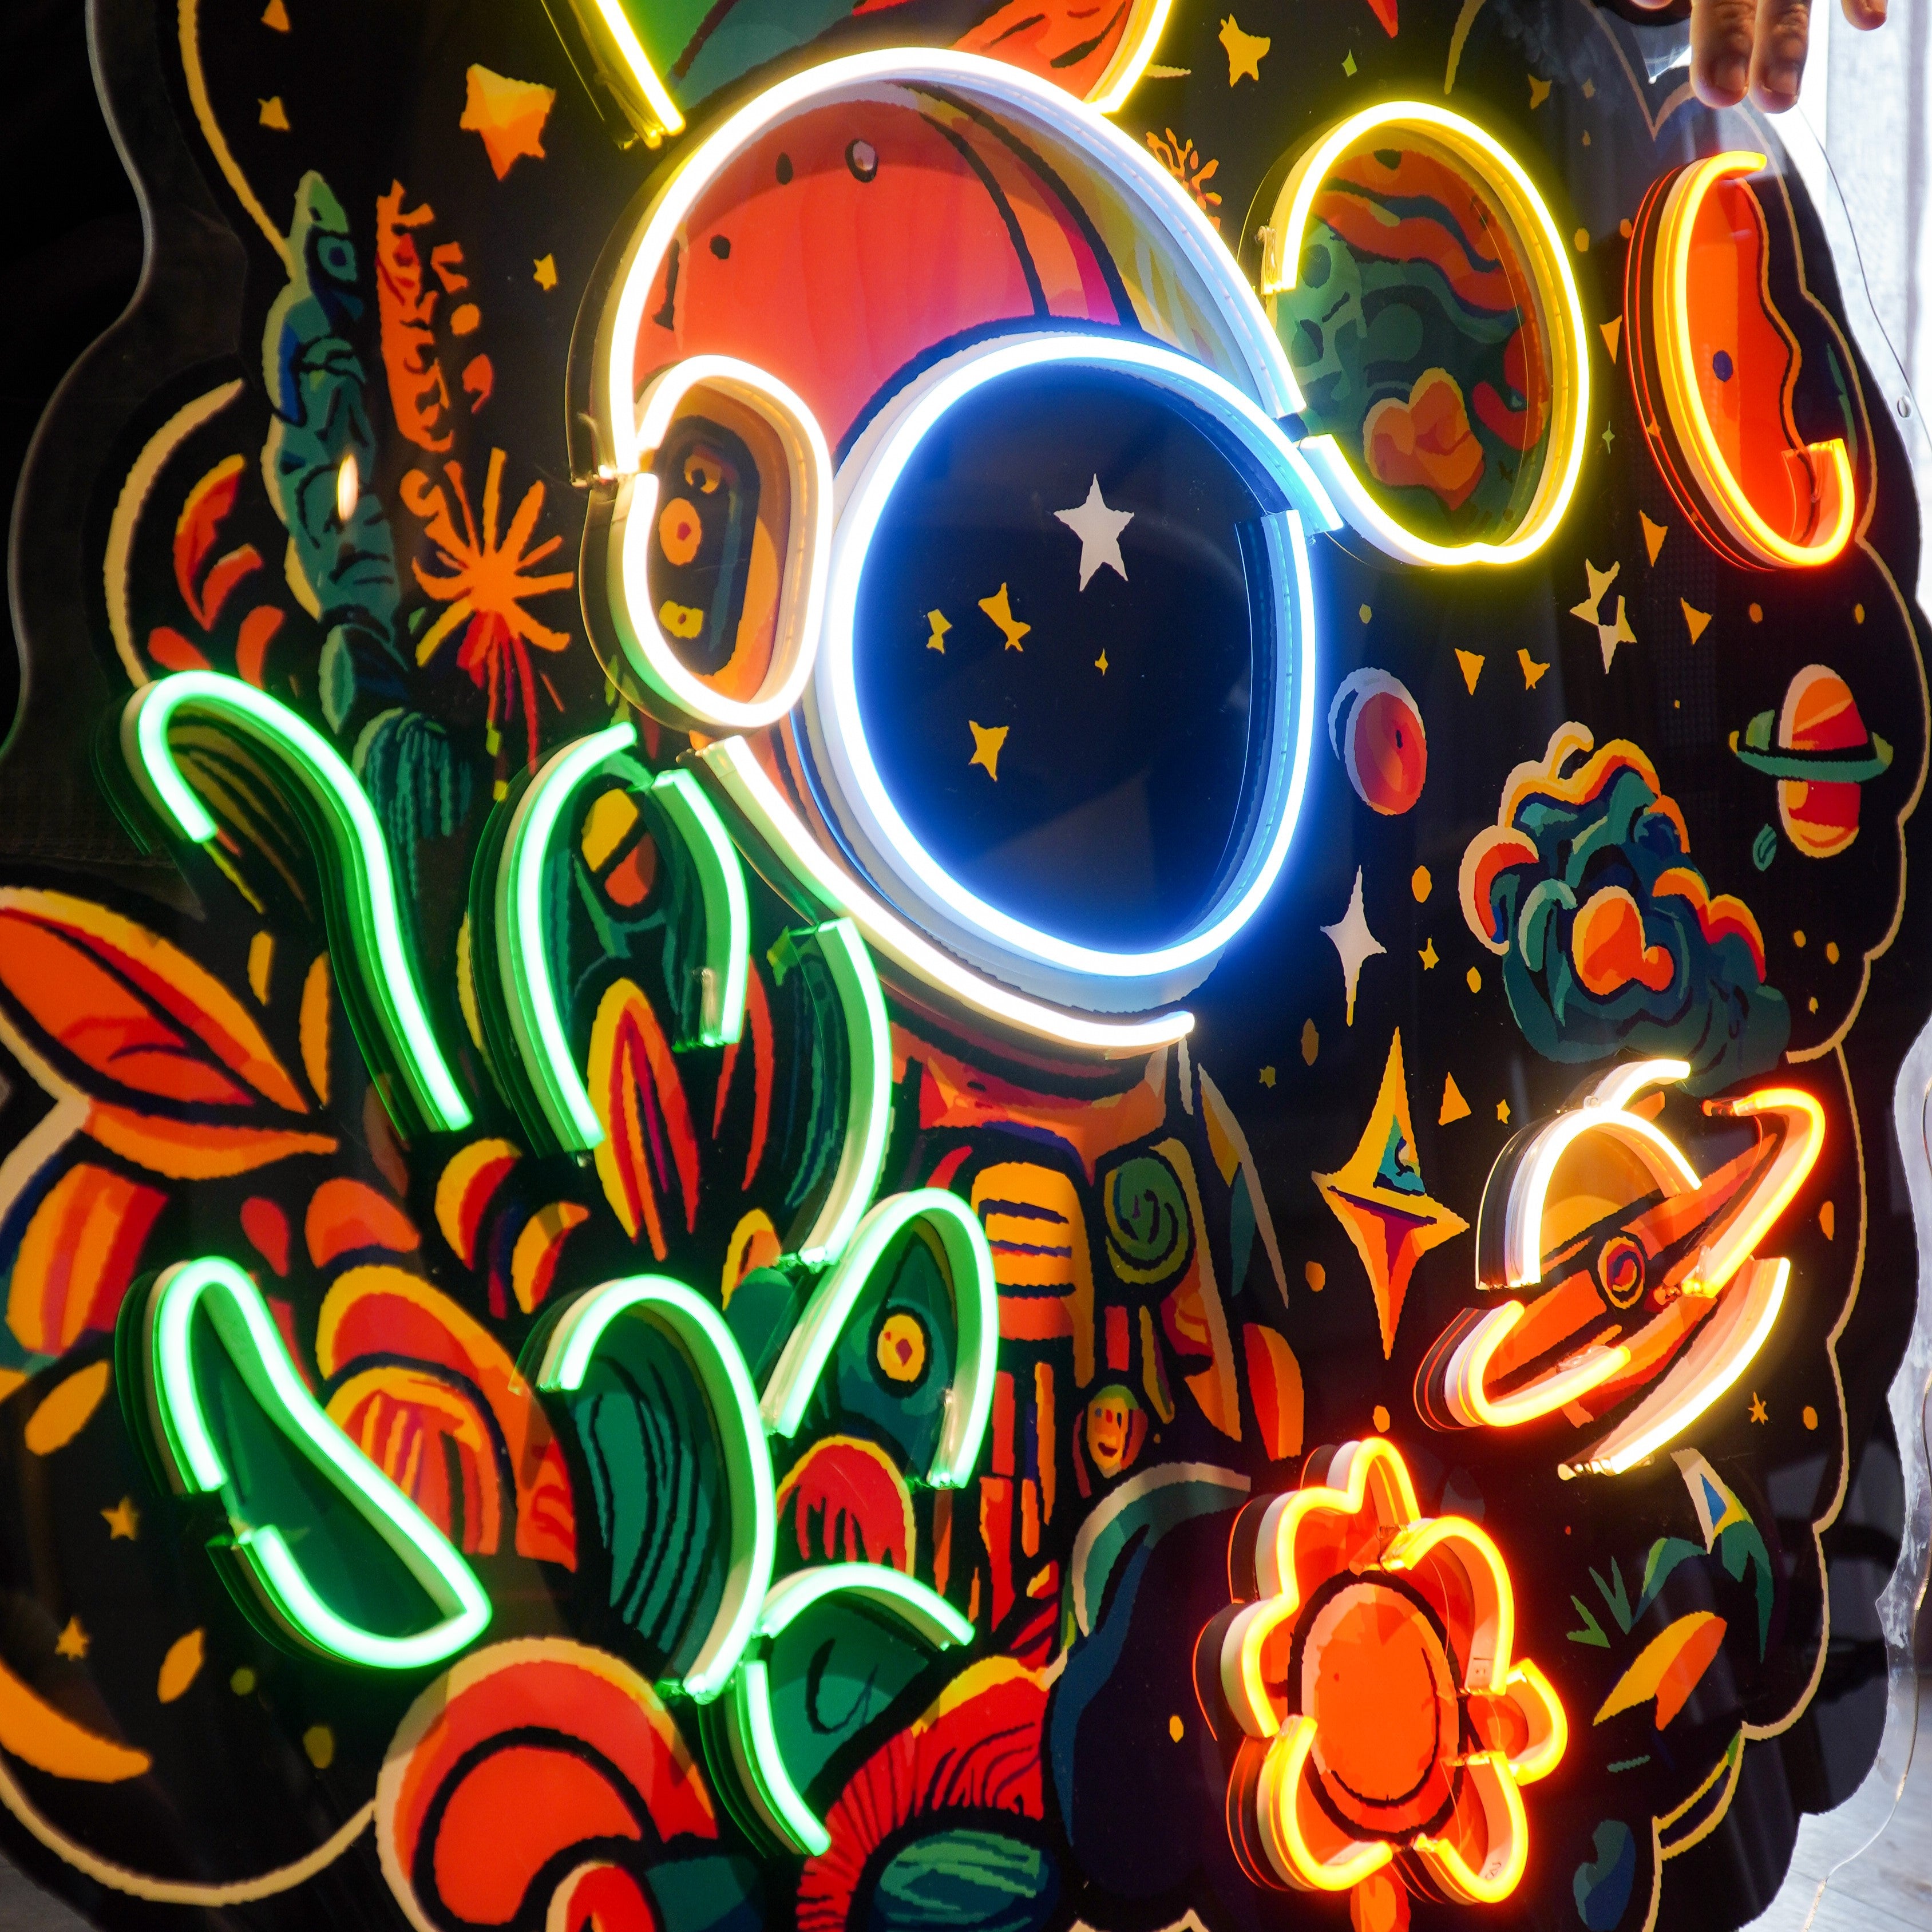 Astronaut Plant Universe LED Neon Sign Light Pop Art